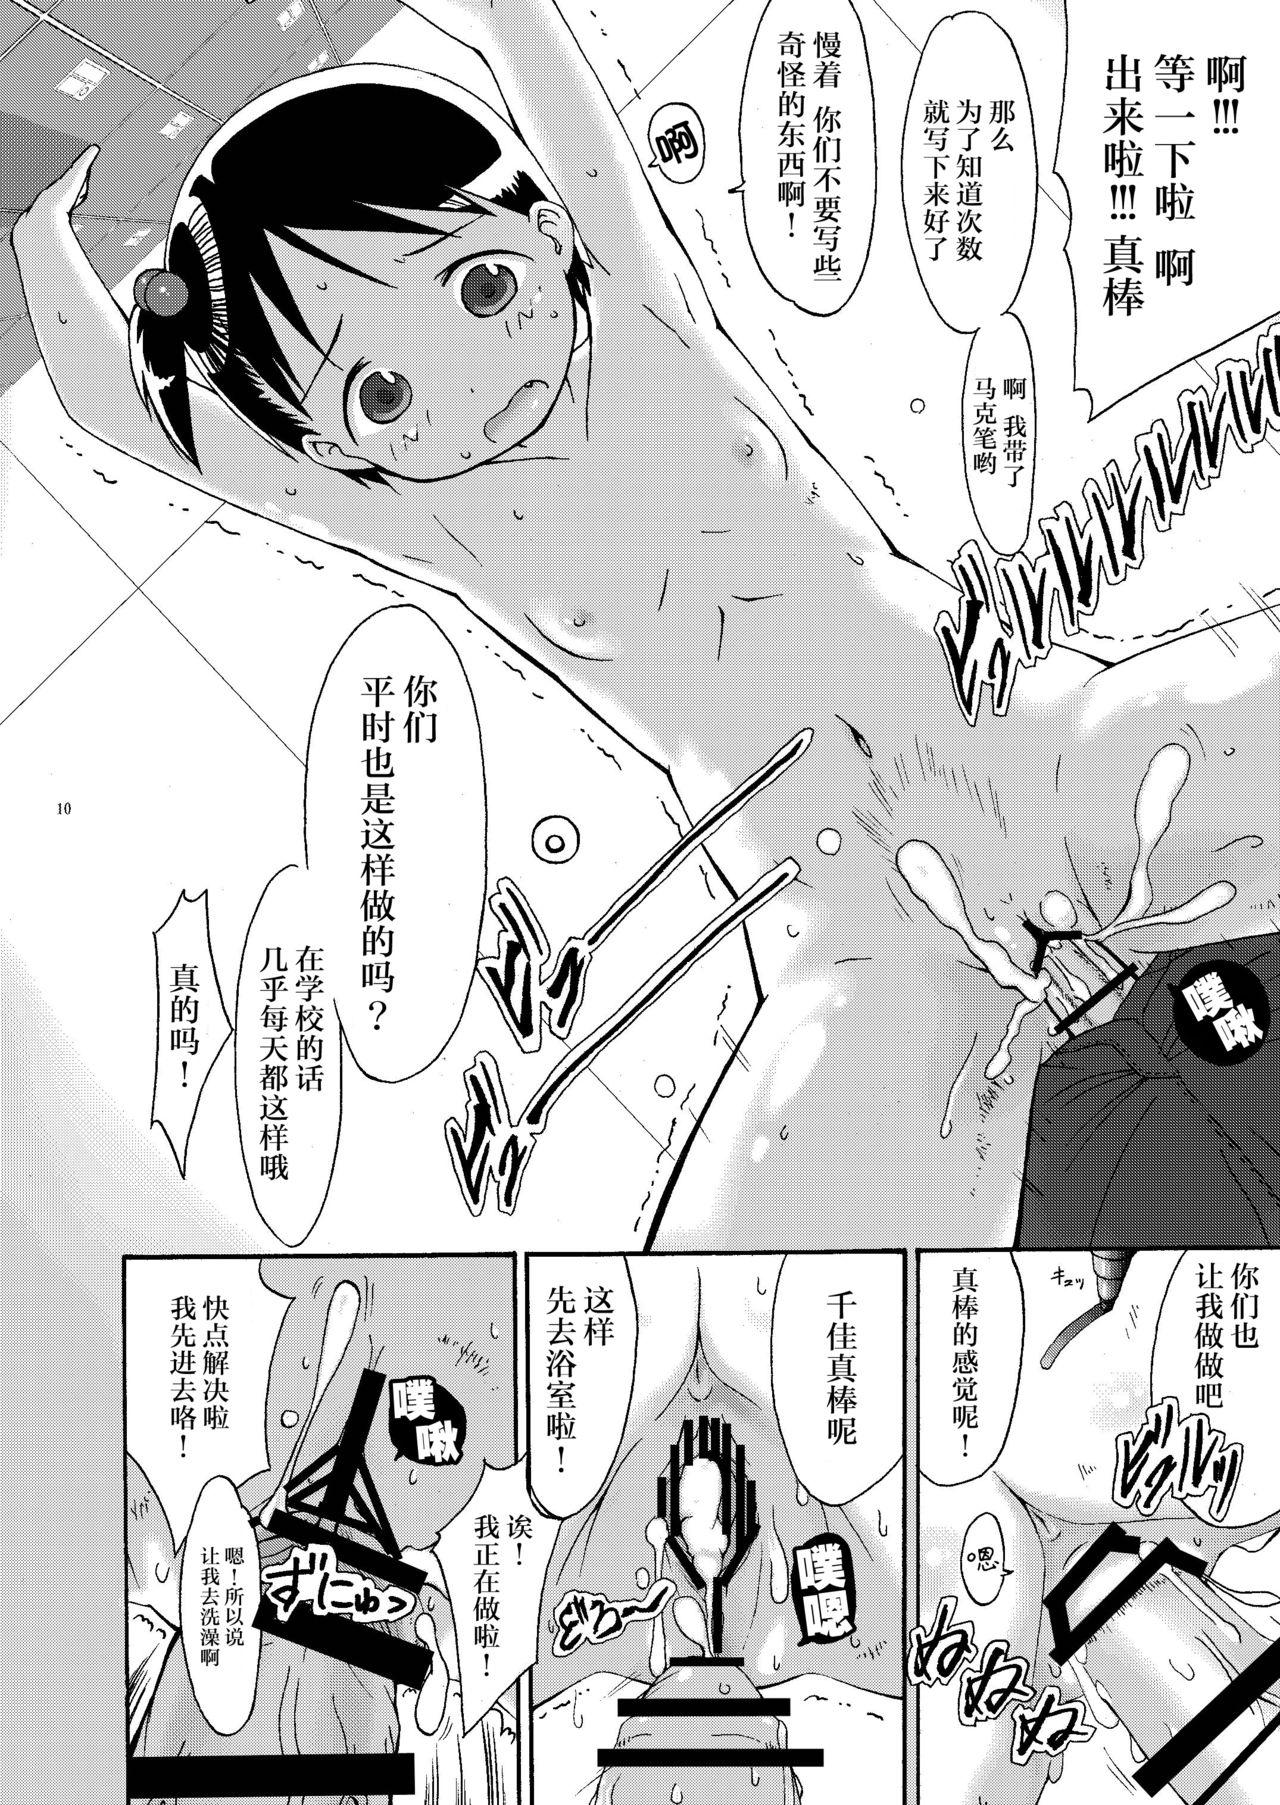 Gay mashimaro ism extra - Ichigo mashimaro Barely 18 Porn - Page 11